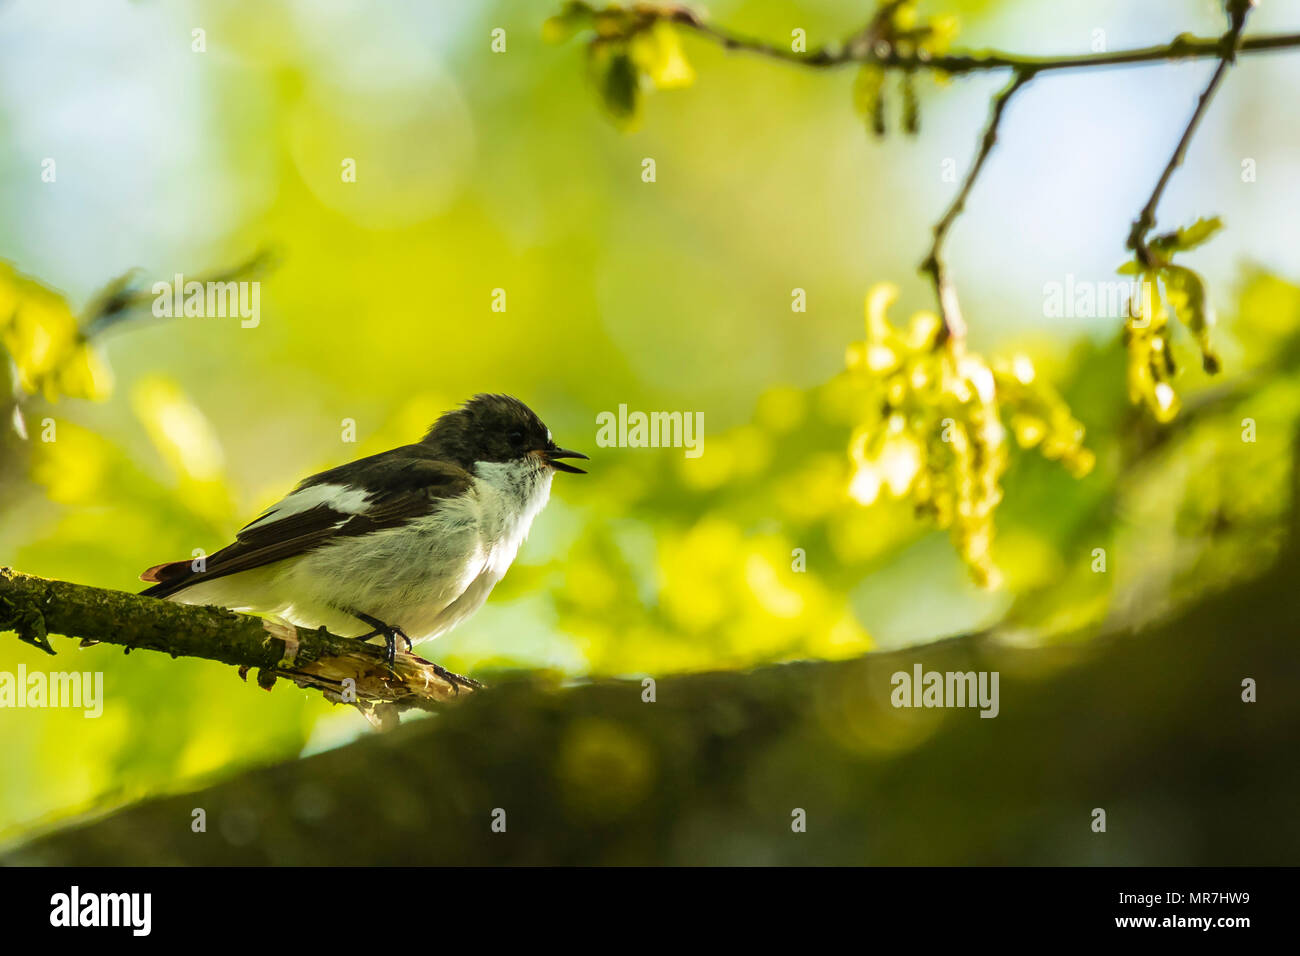 Primer plano de un europeo de aves papamoscas cerrojillo (Ficedula hypoleuca) donde se posan en una rama, cantando en un bosque verde durante la primavera temporada de cría. Foto de stock